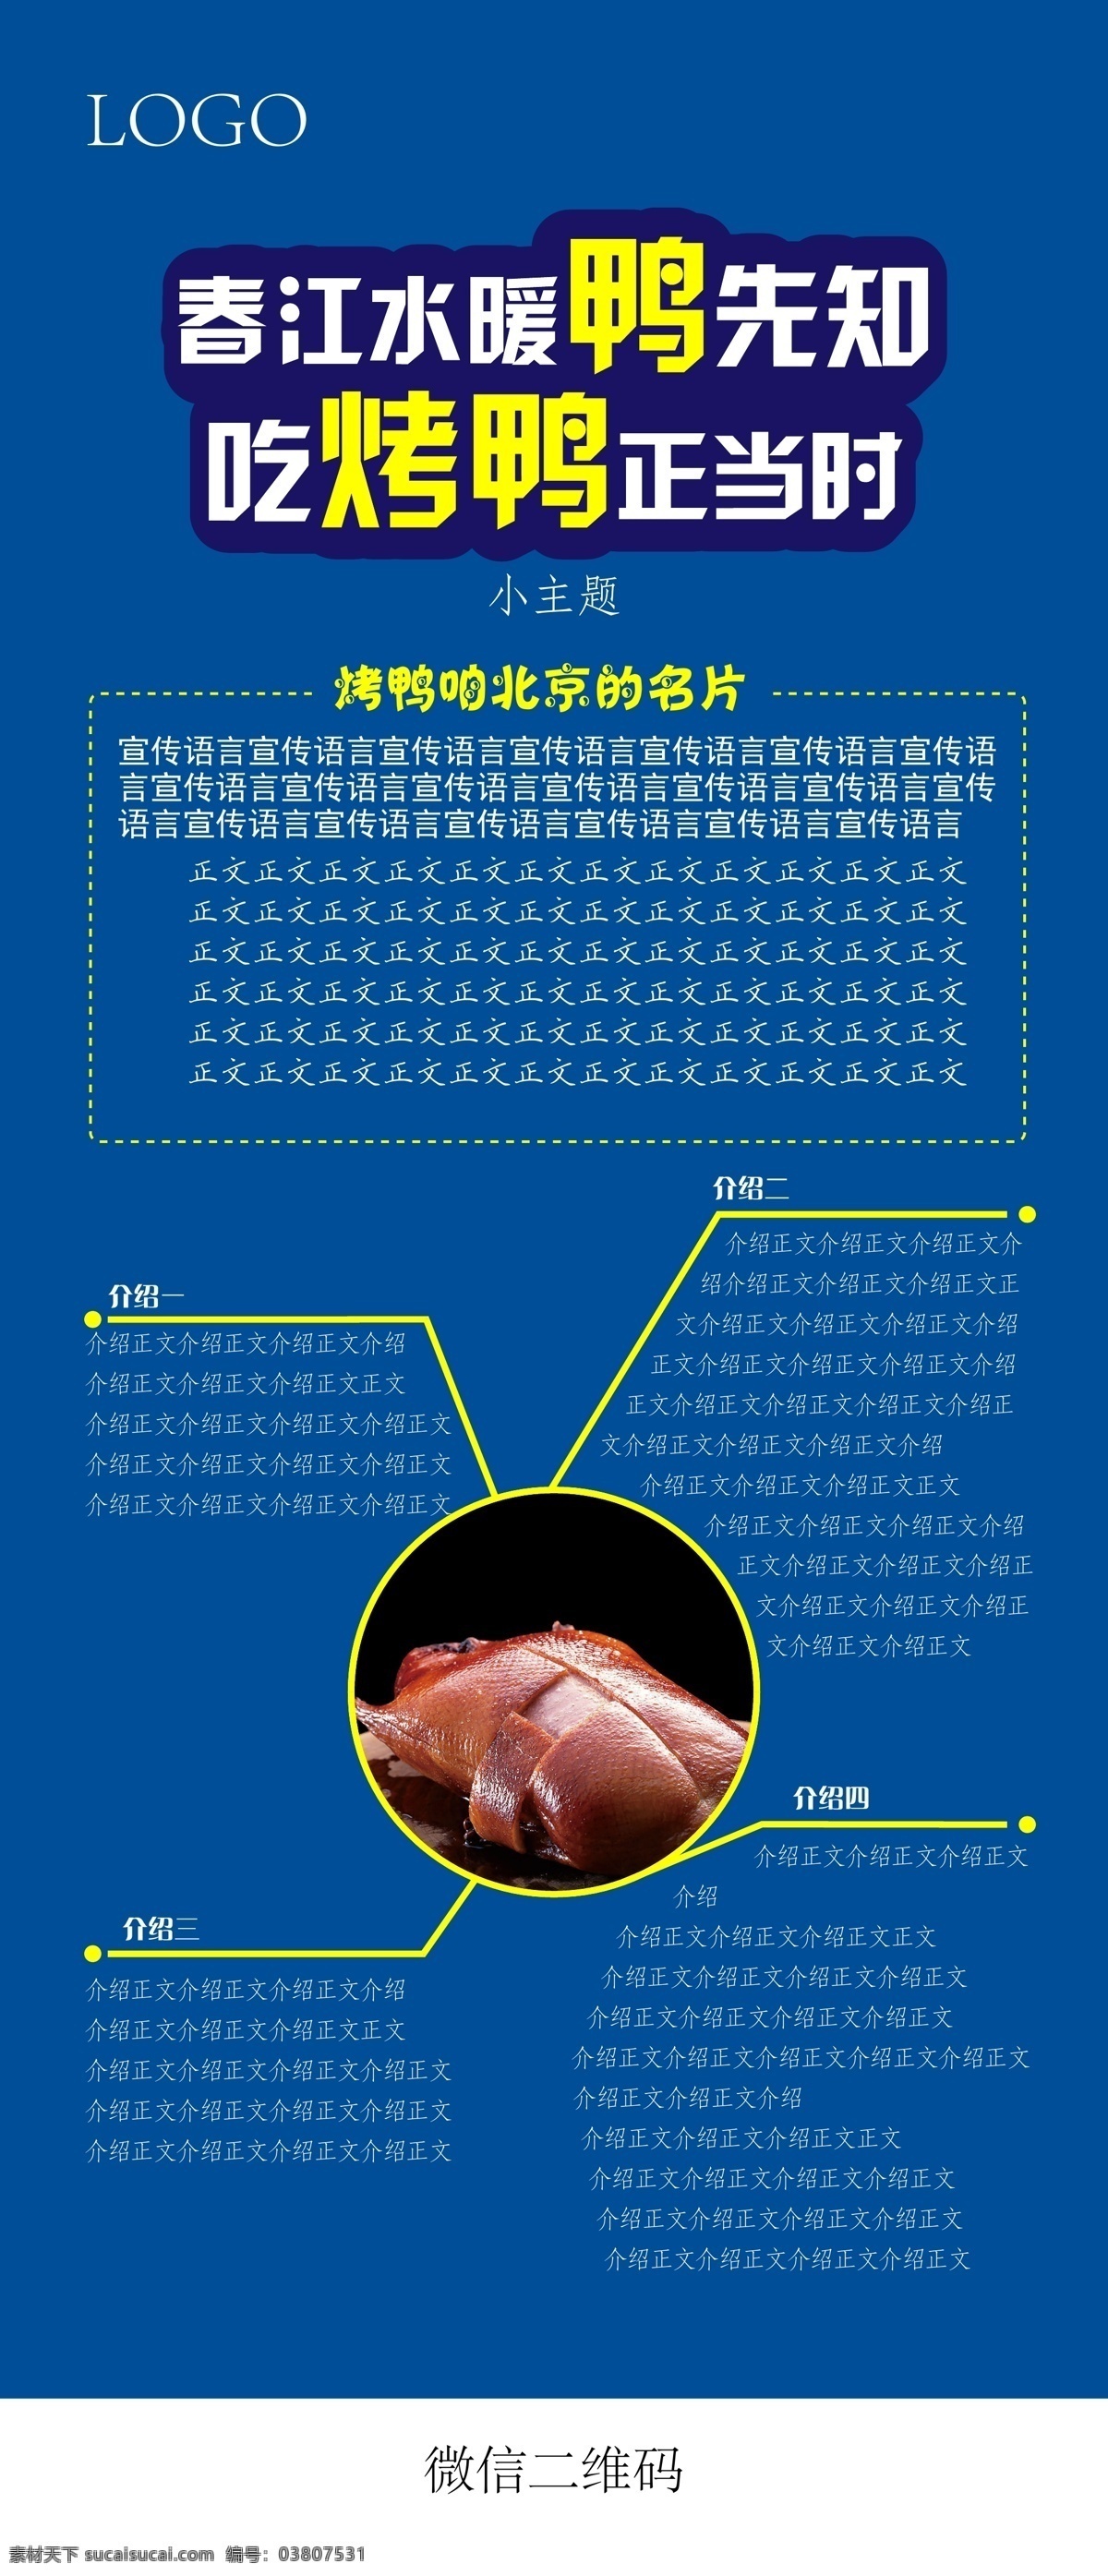 烤鸭海报 北京烤鸭 60x140cm 可替换文字 蓝色